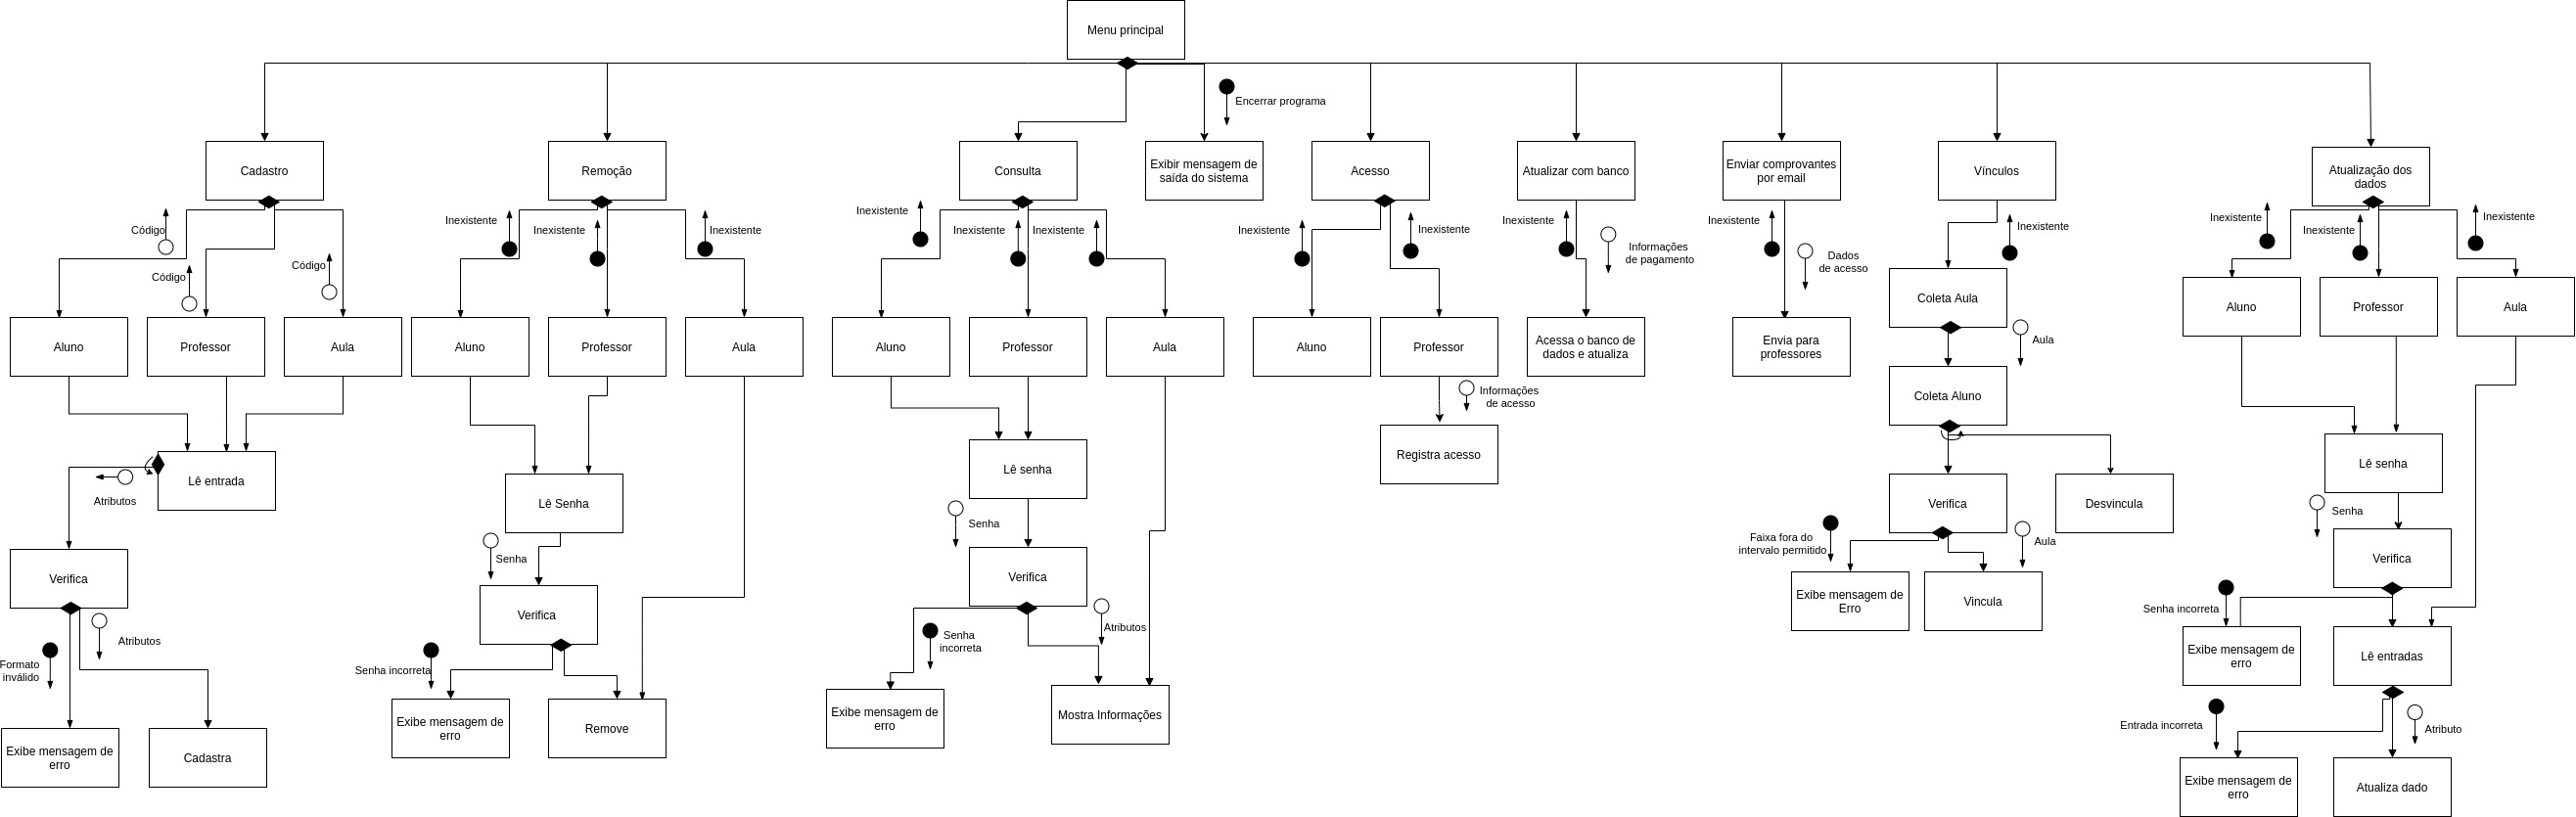 Hierarquia dos modulos.jpg